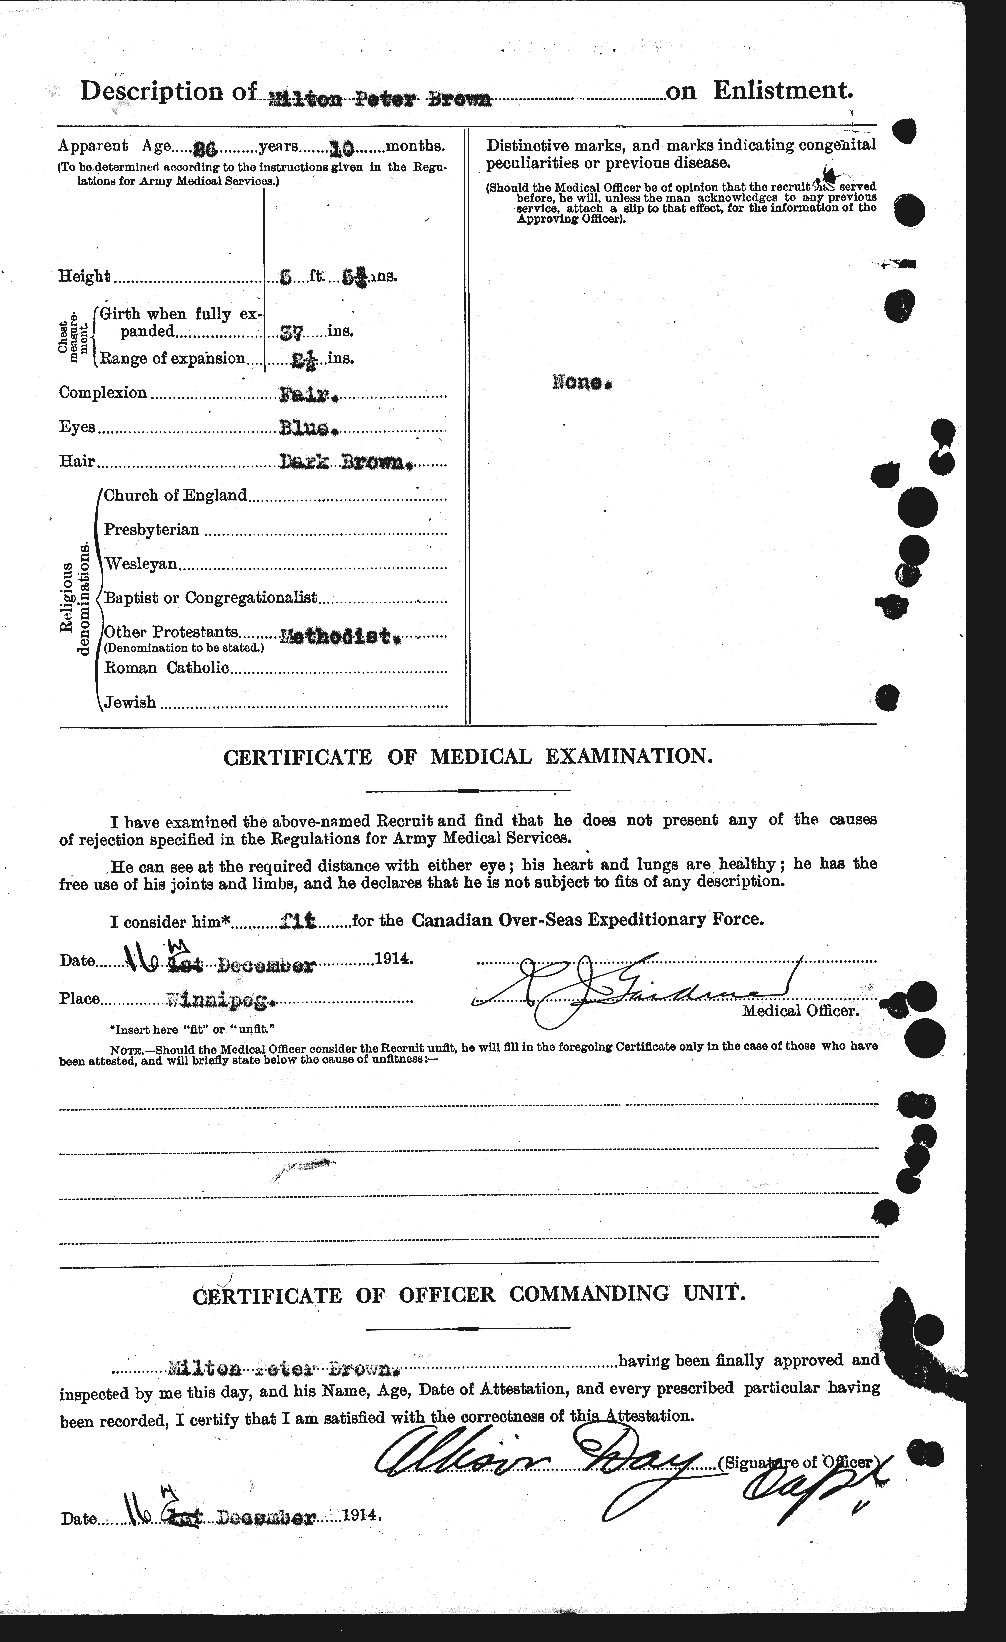 Dossiers du Personnel de la Première Guerre mondiale - CEC 267072b